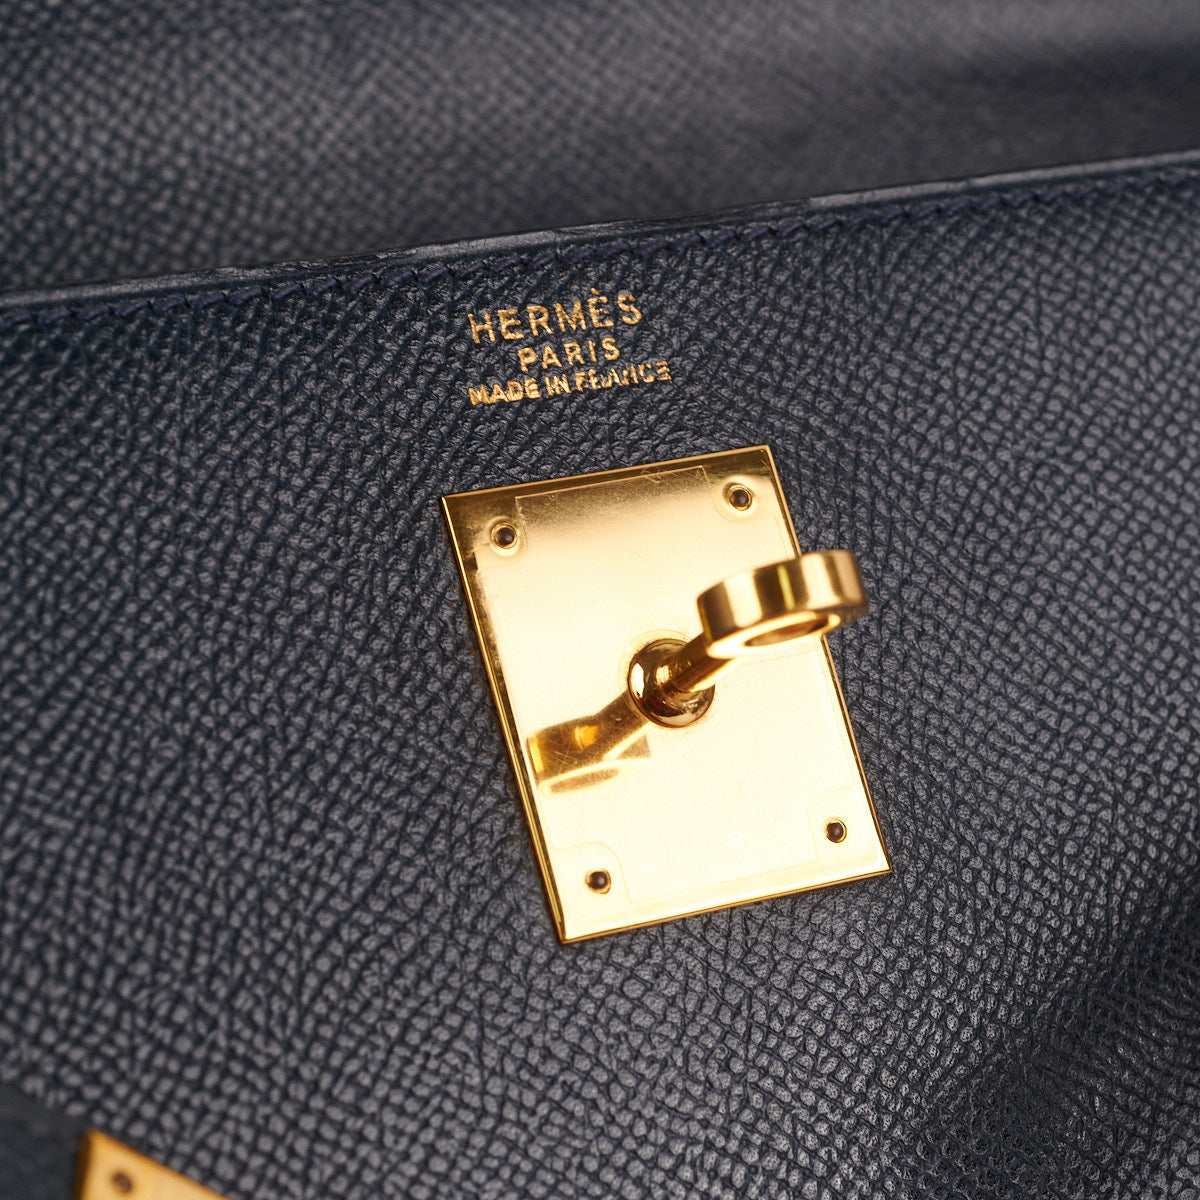 Hermes Kelly 32 Sellier, Bleu Nuit GHW, Epsom, Luxury, Bags